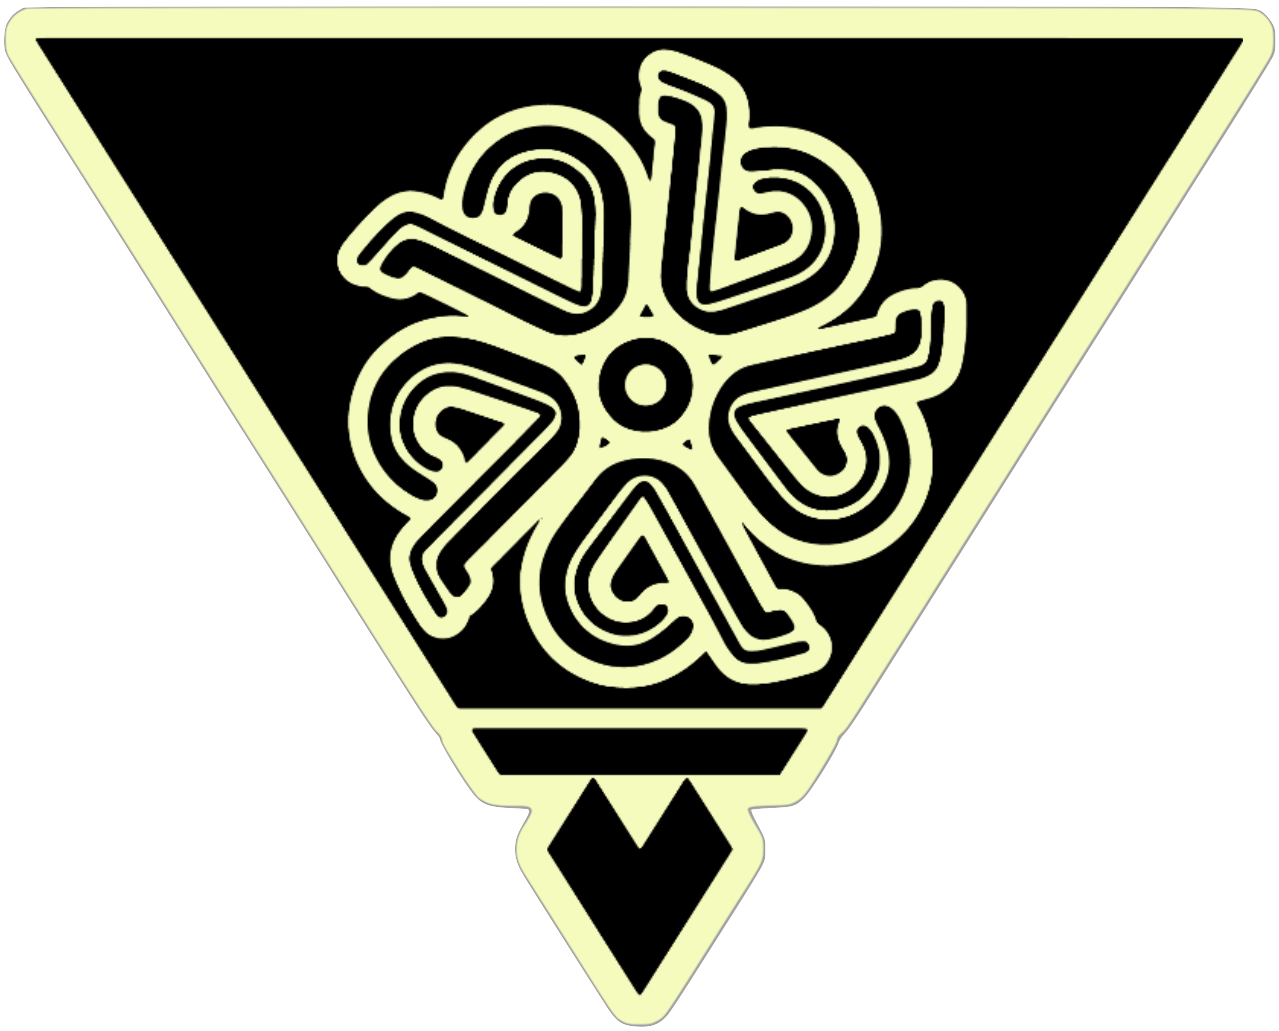 Pua Triangle Sticker, from Håfaloha